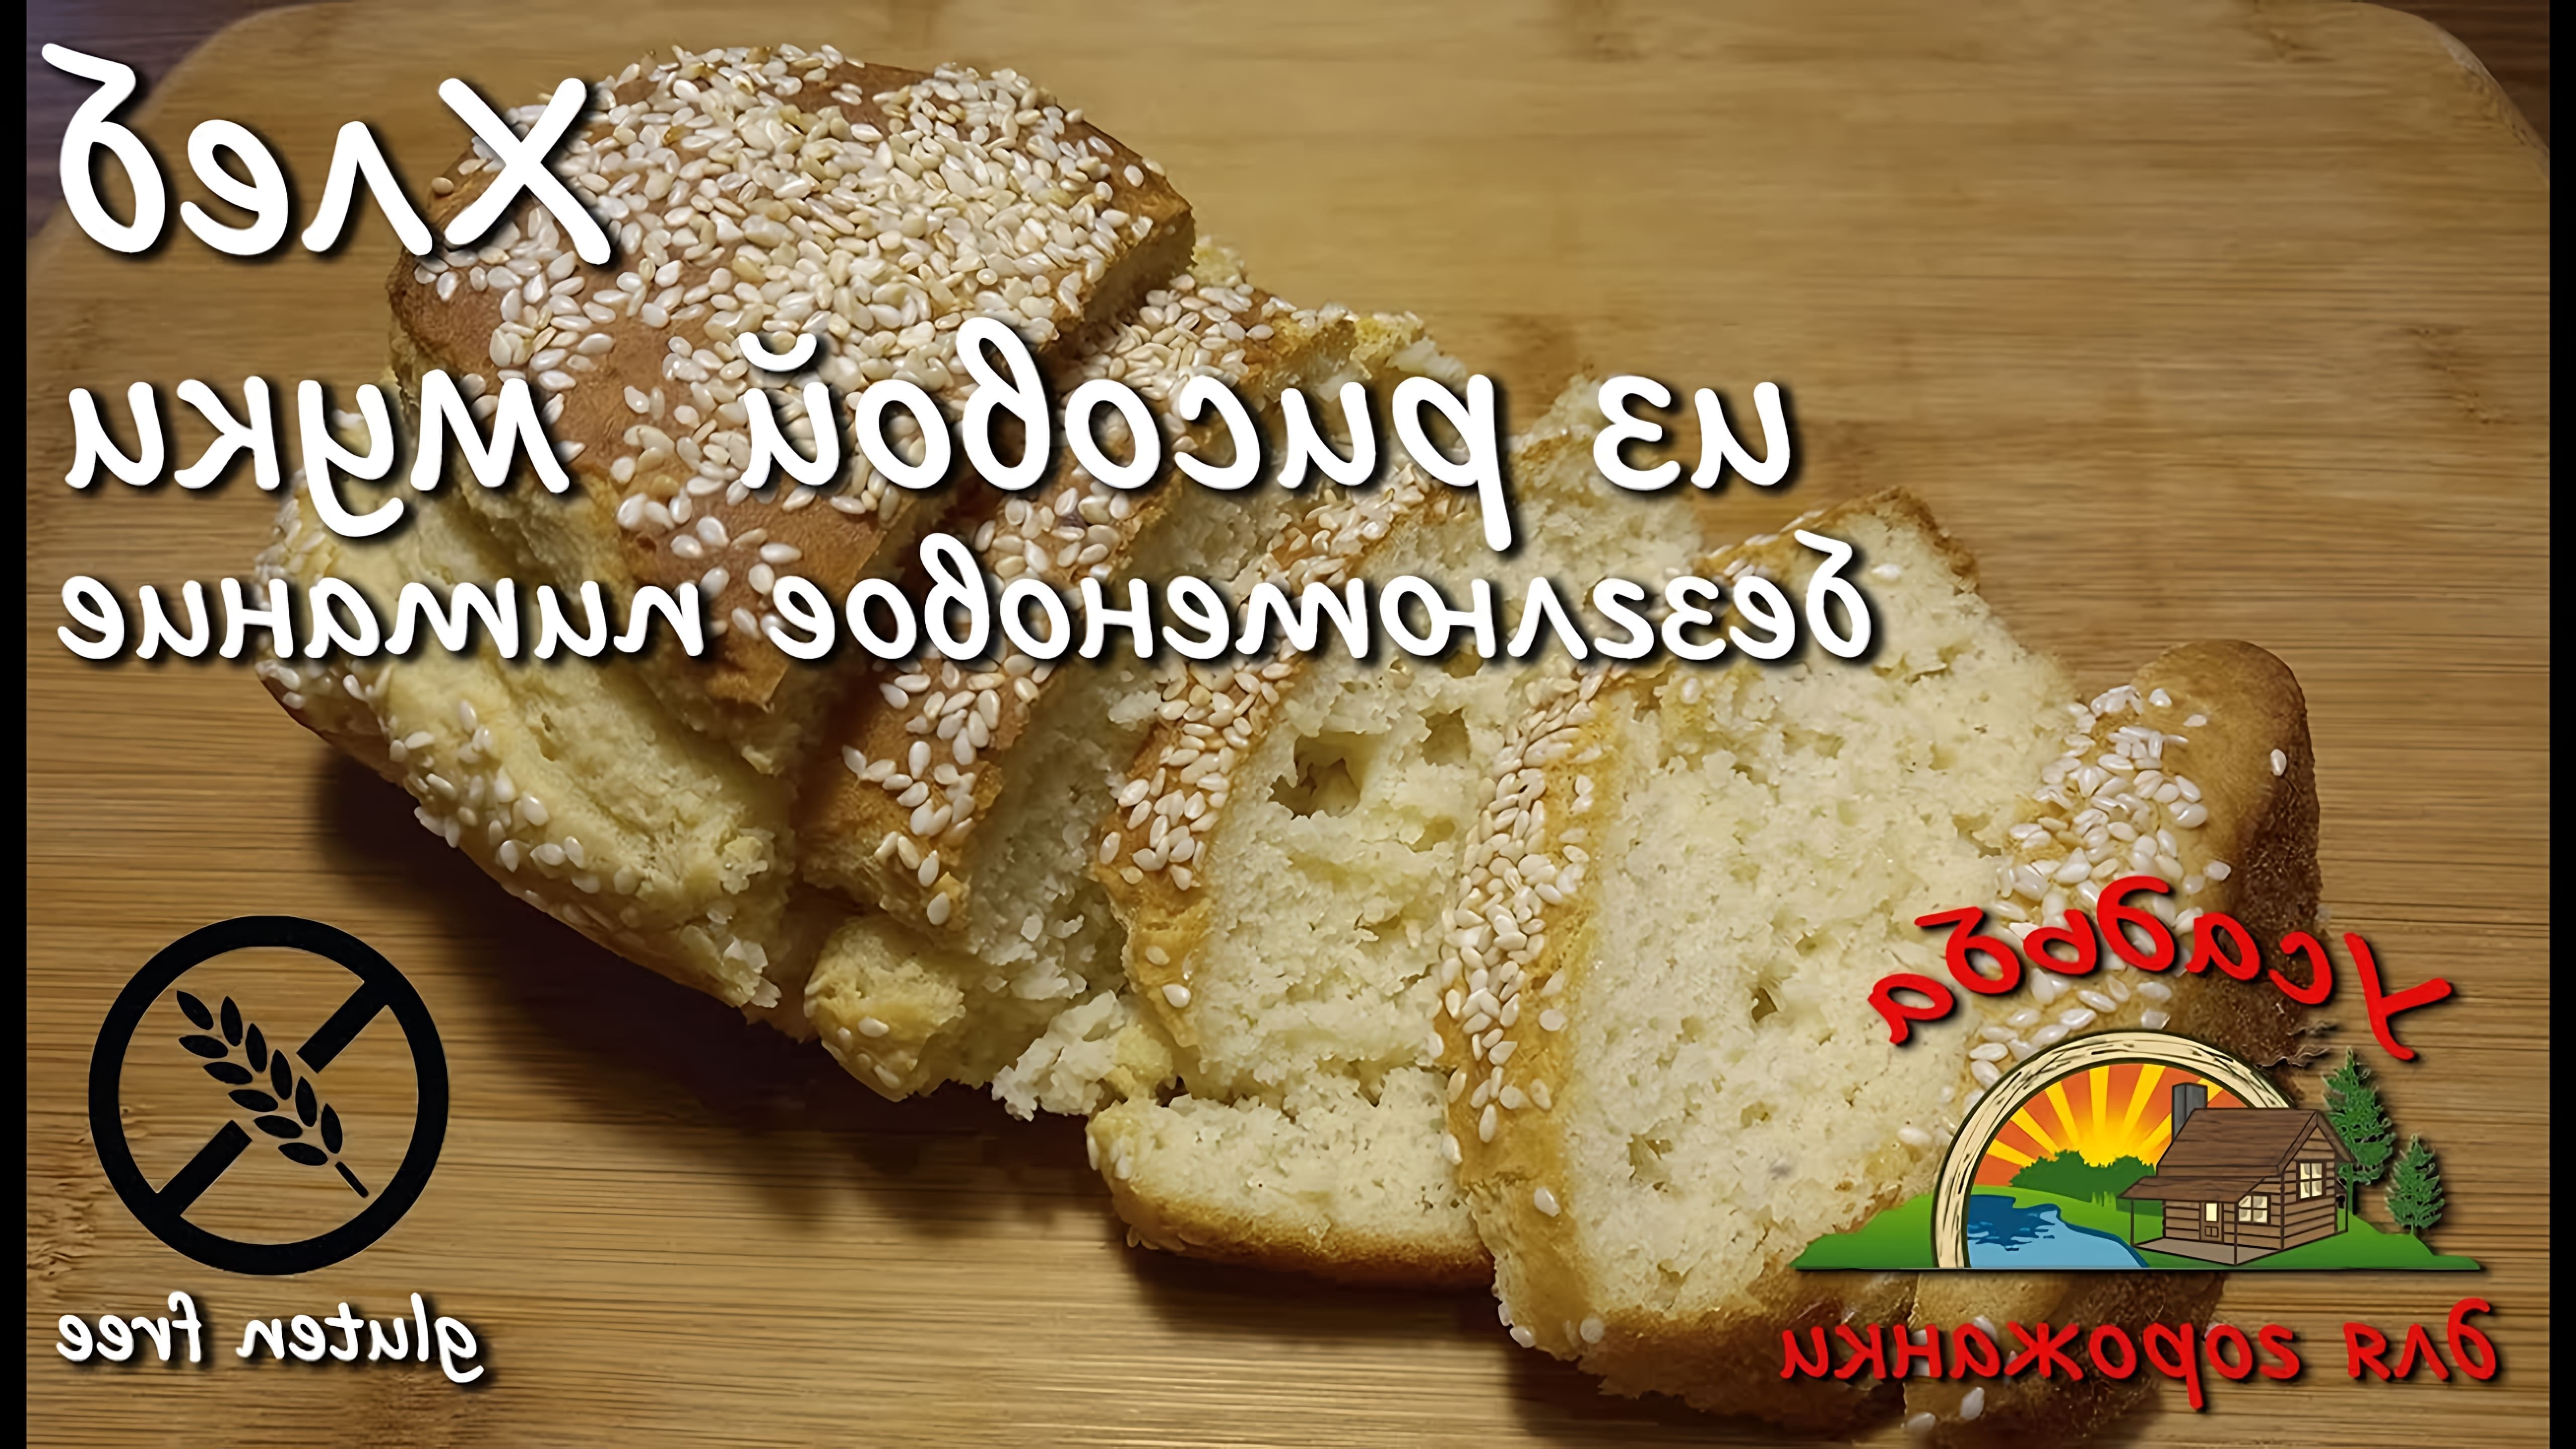 В данном видео демонстрируется рецепт приготовления безглютенового хлеба из рисовой муки